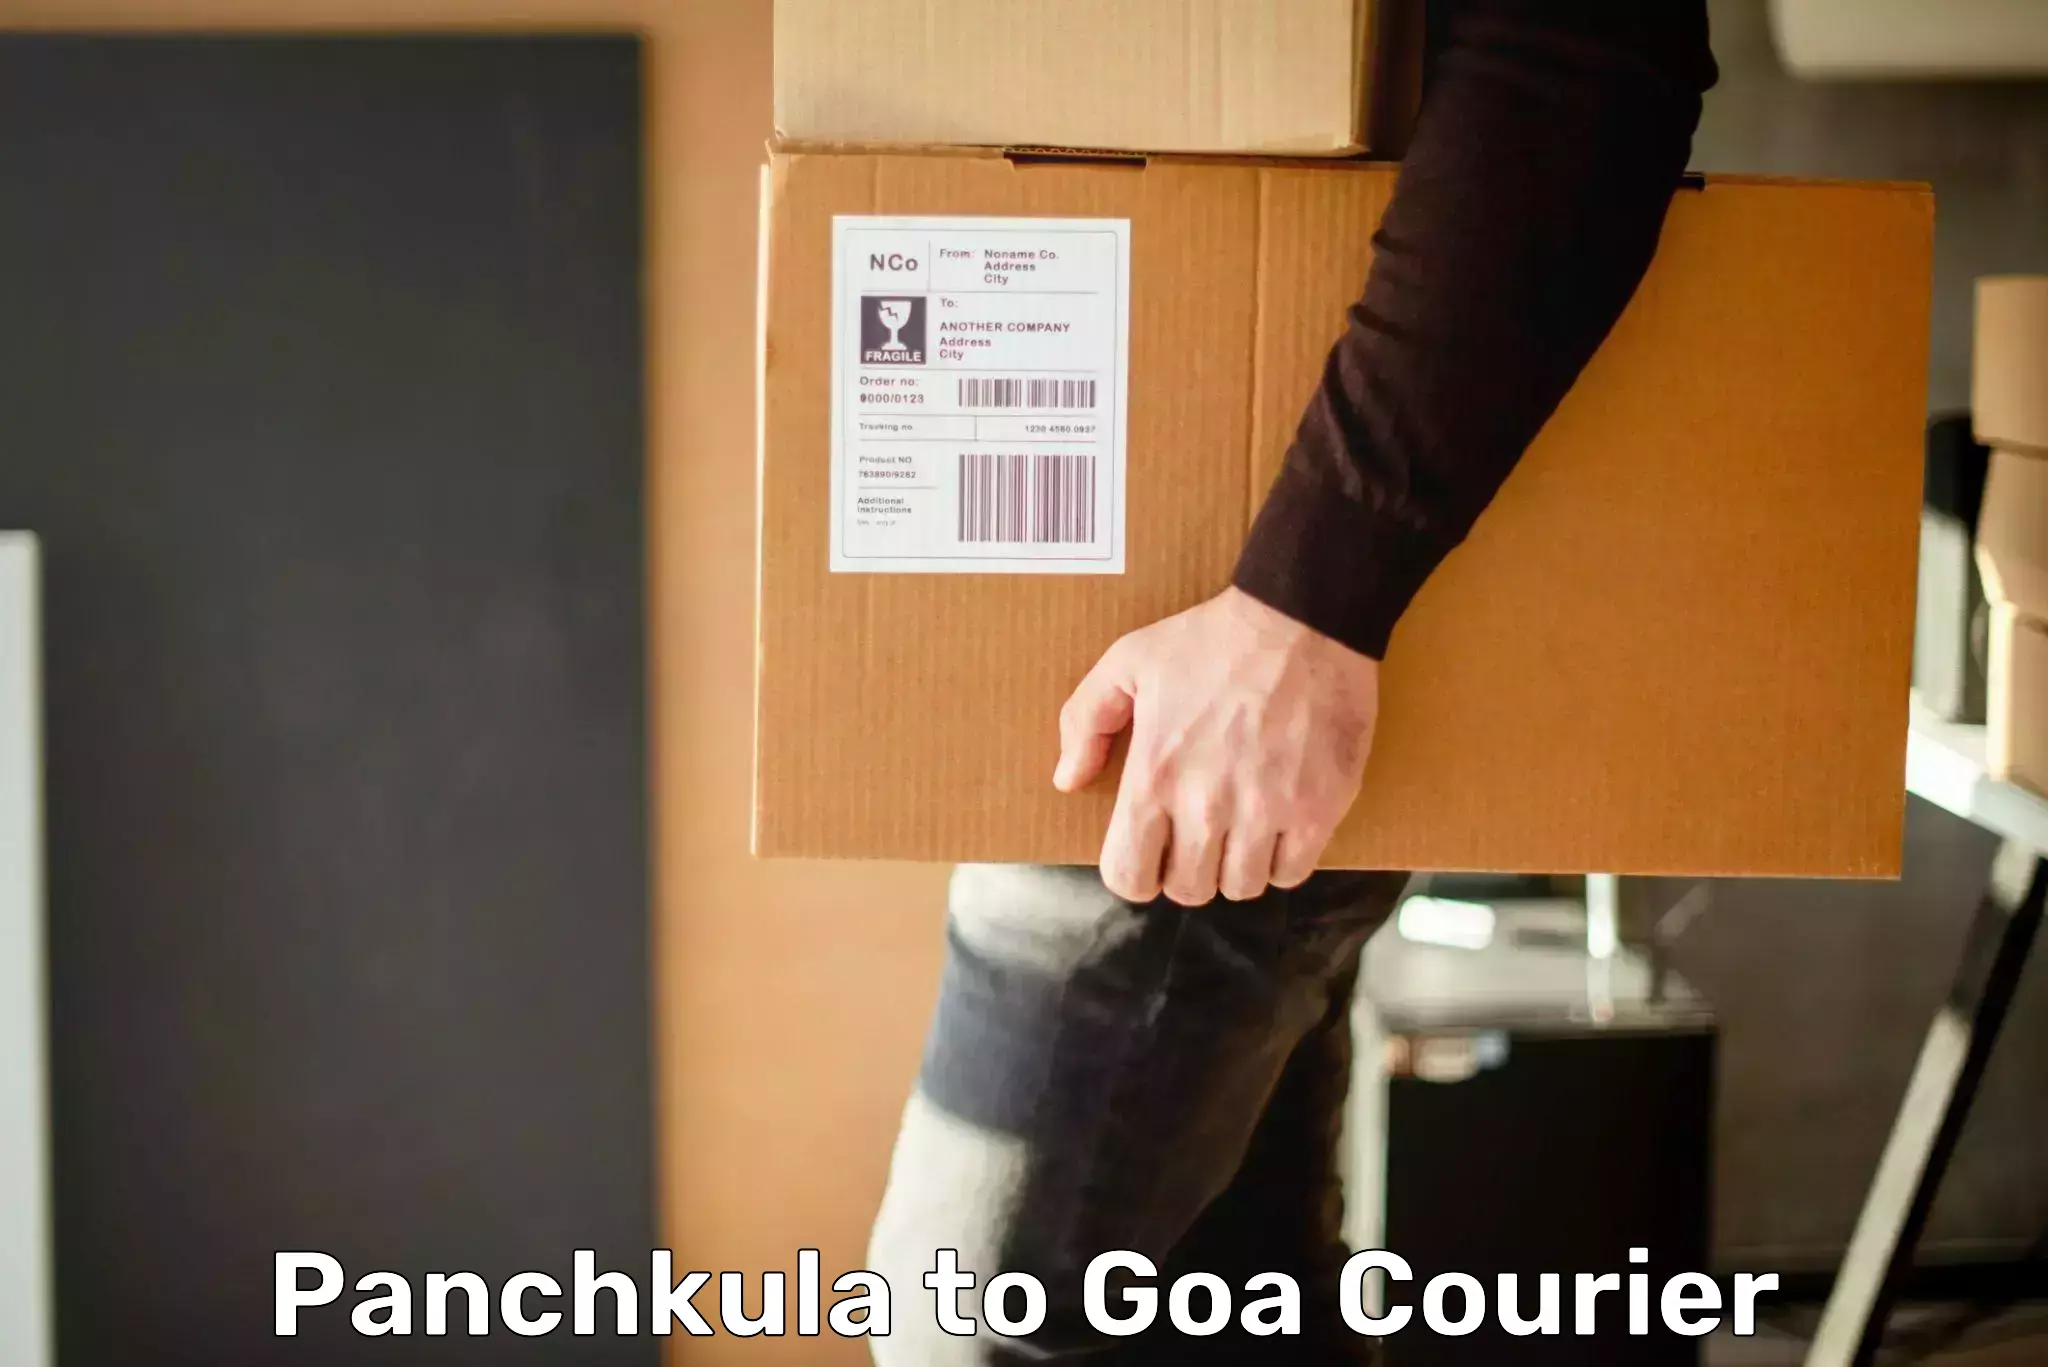 Global logistics network Panchkula to Goa University